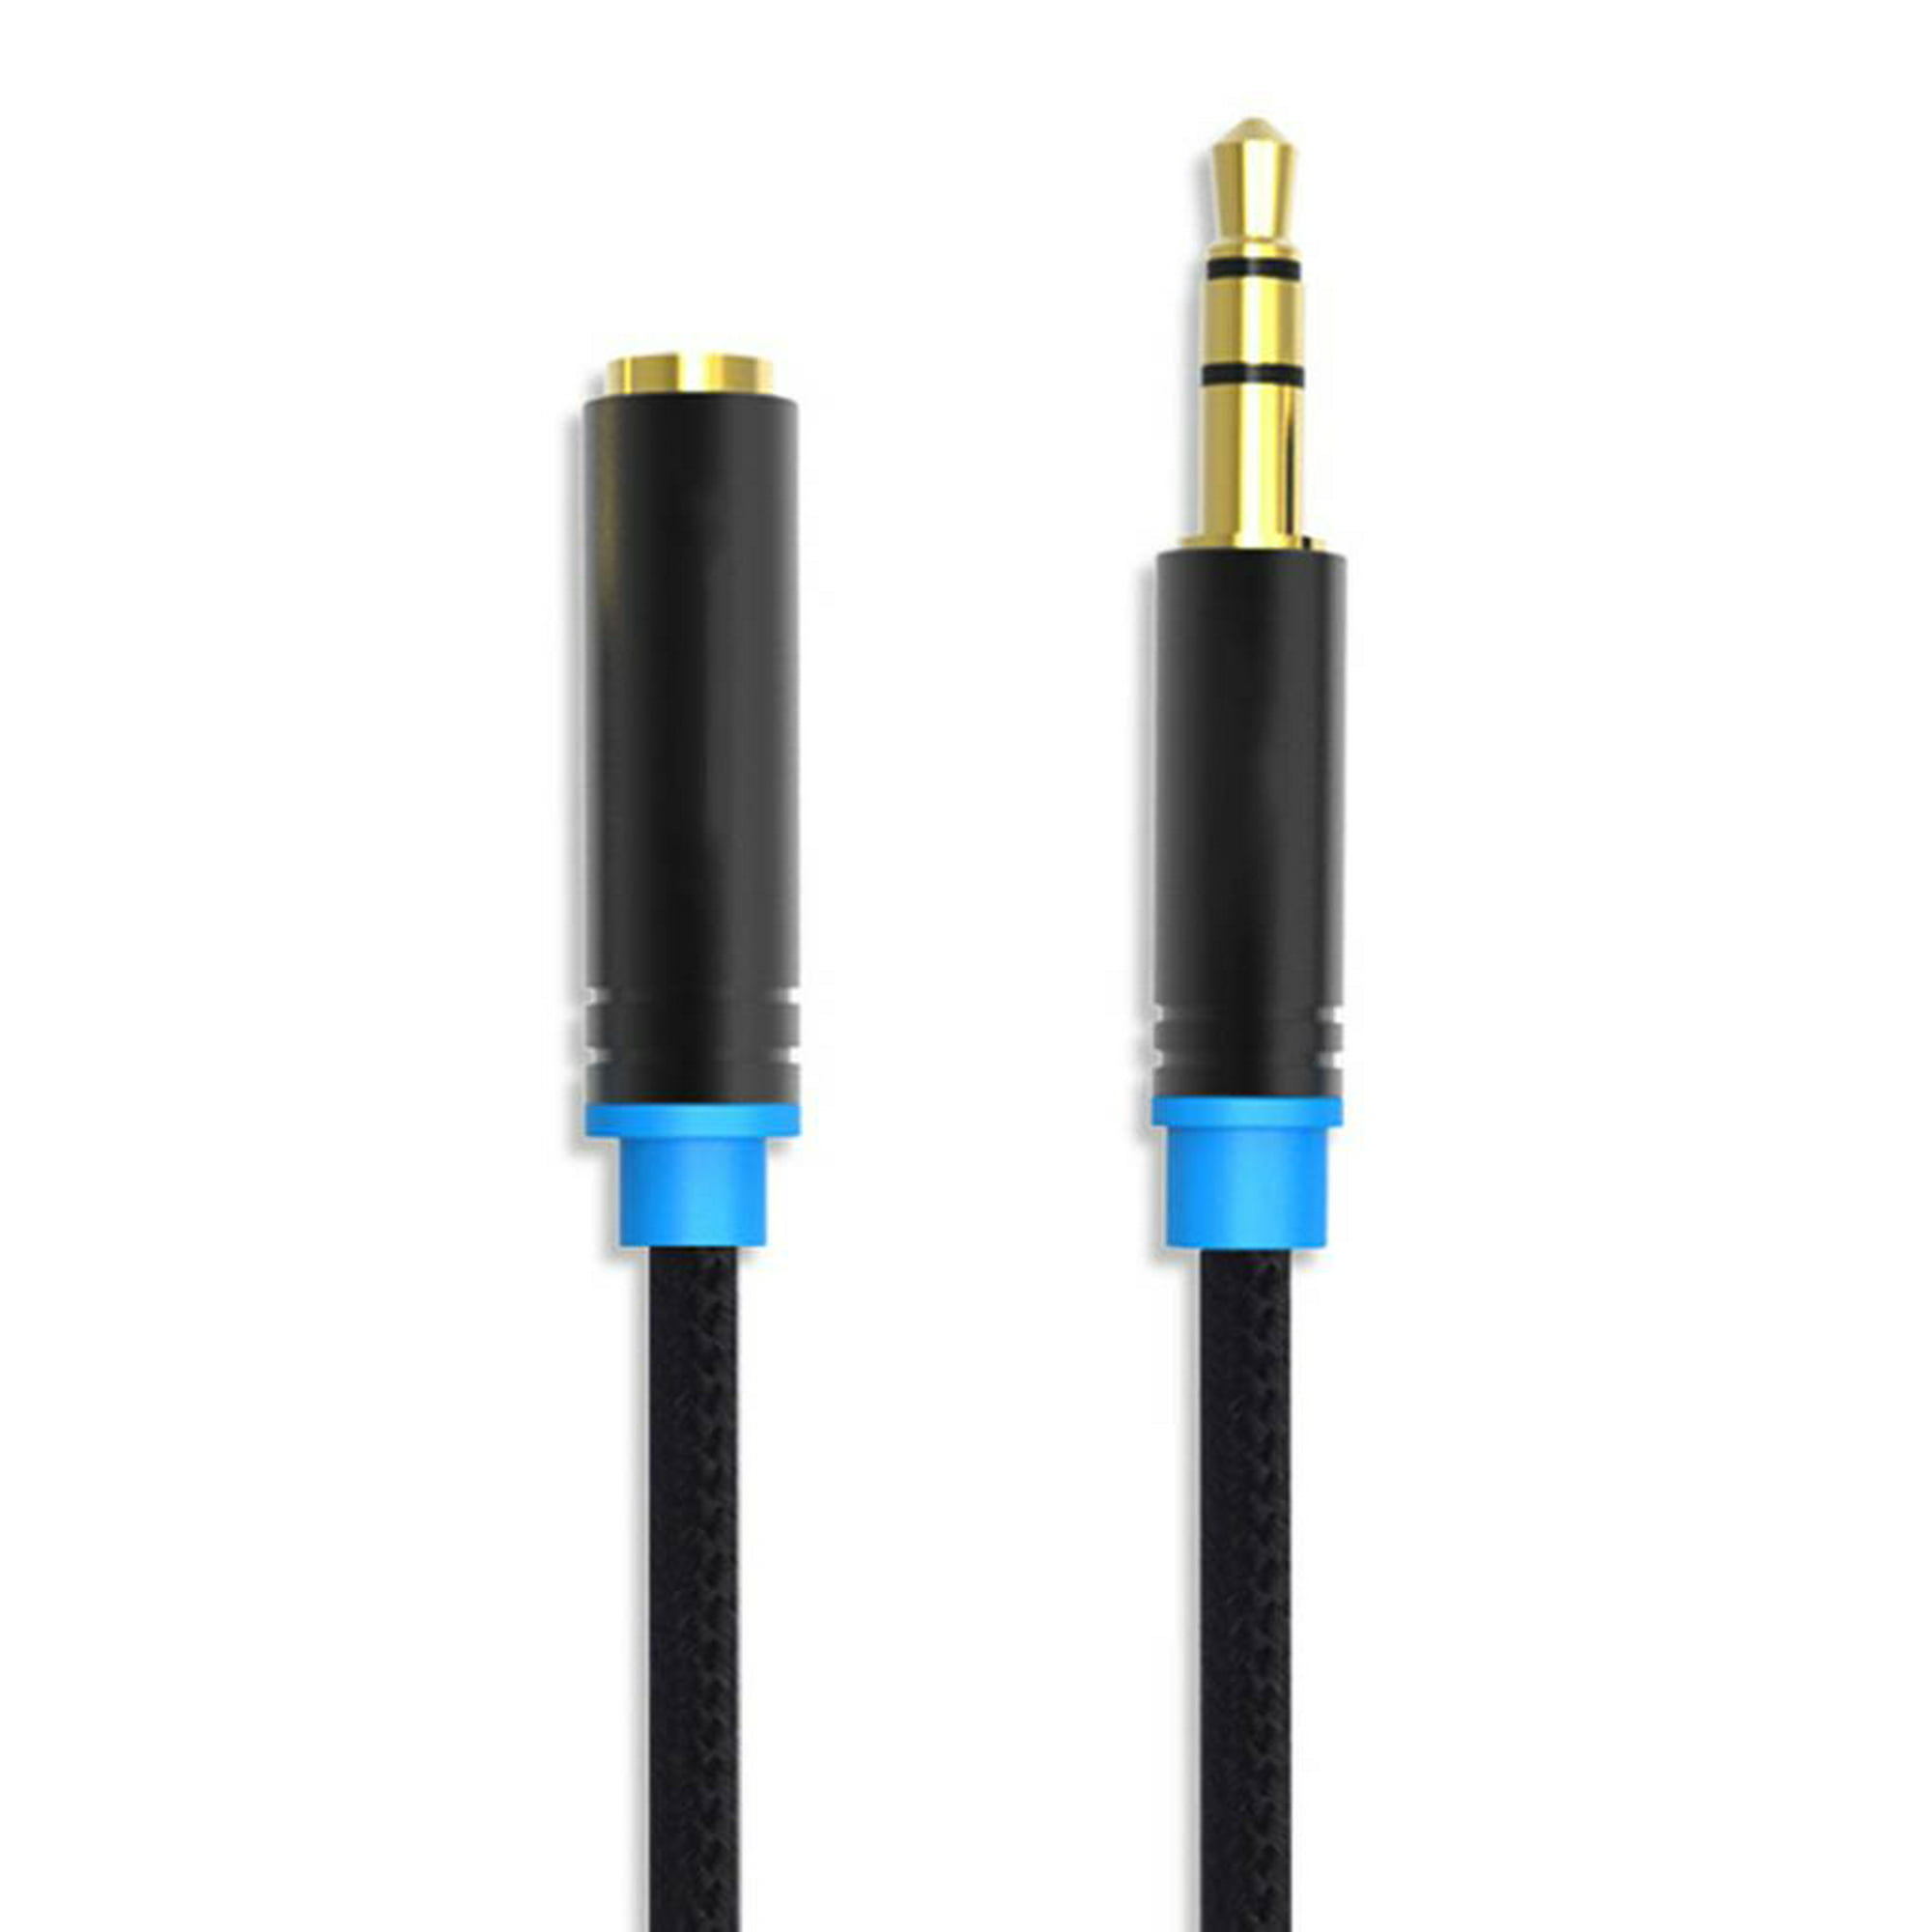 Cable auxiliar 3,5 mm con manos libres, de 1,2 m Steren